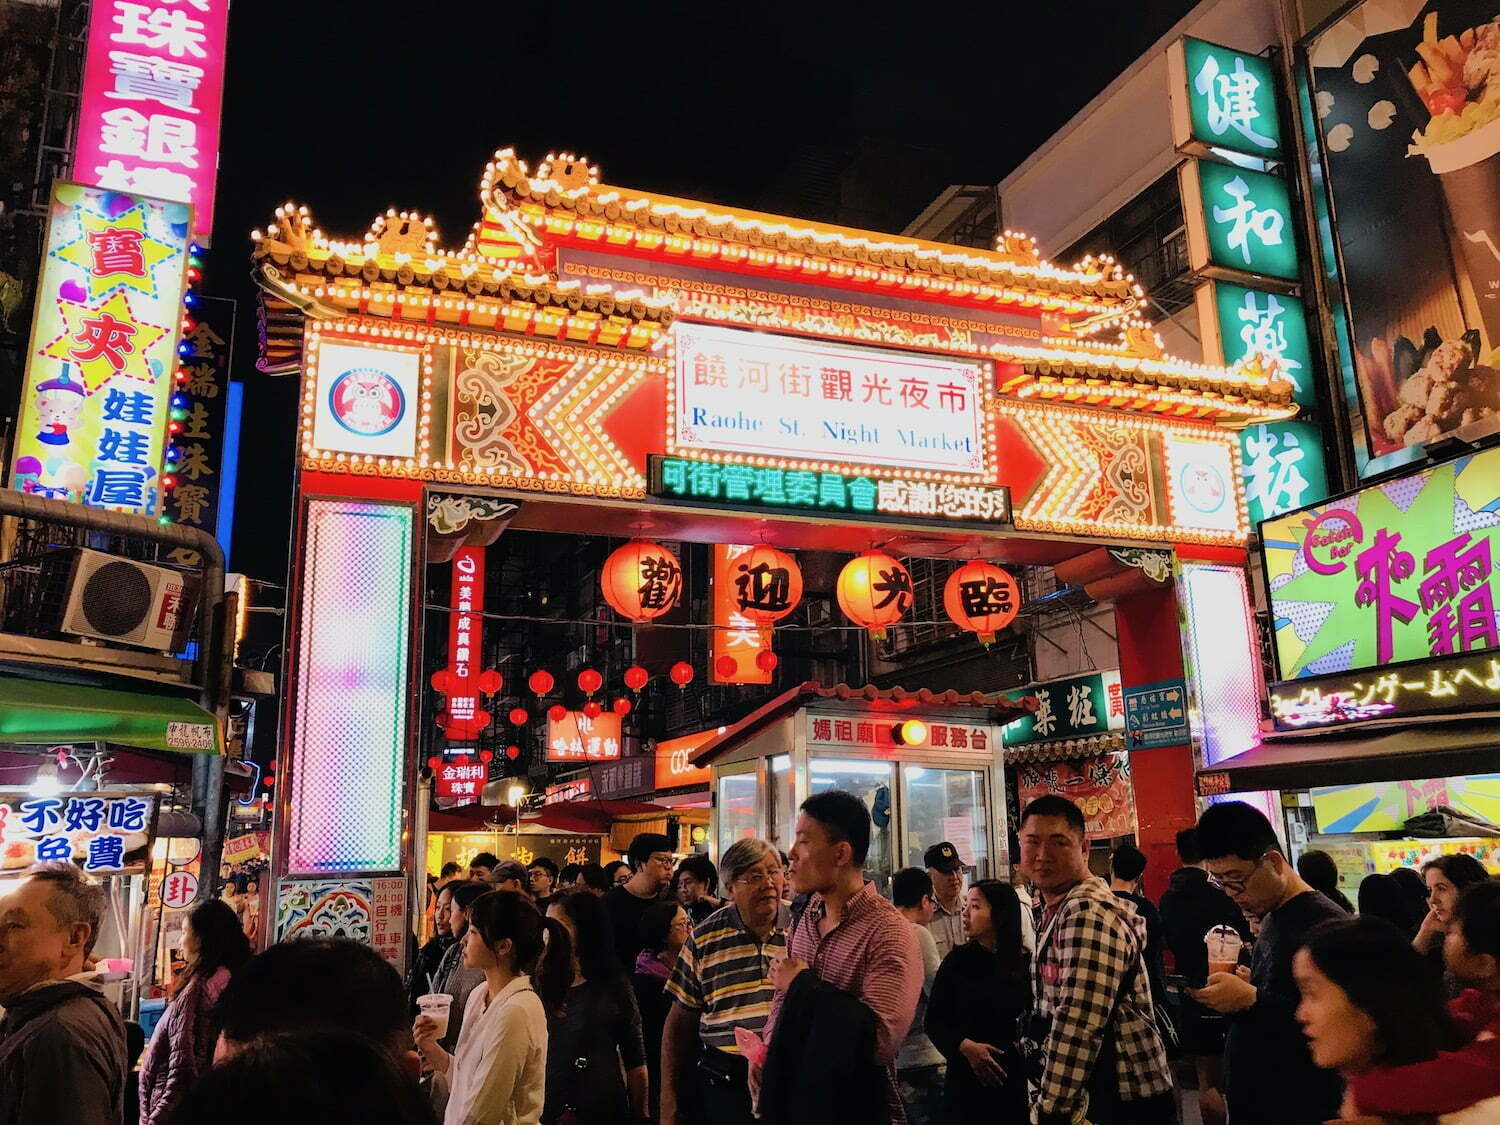 Night Market near Shouzan station in Taipei